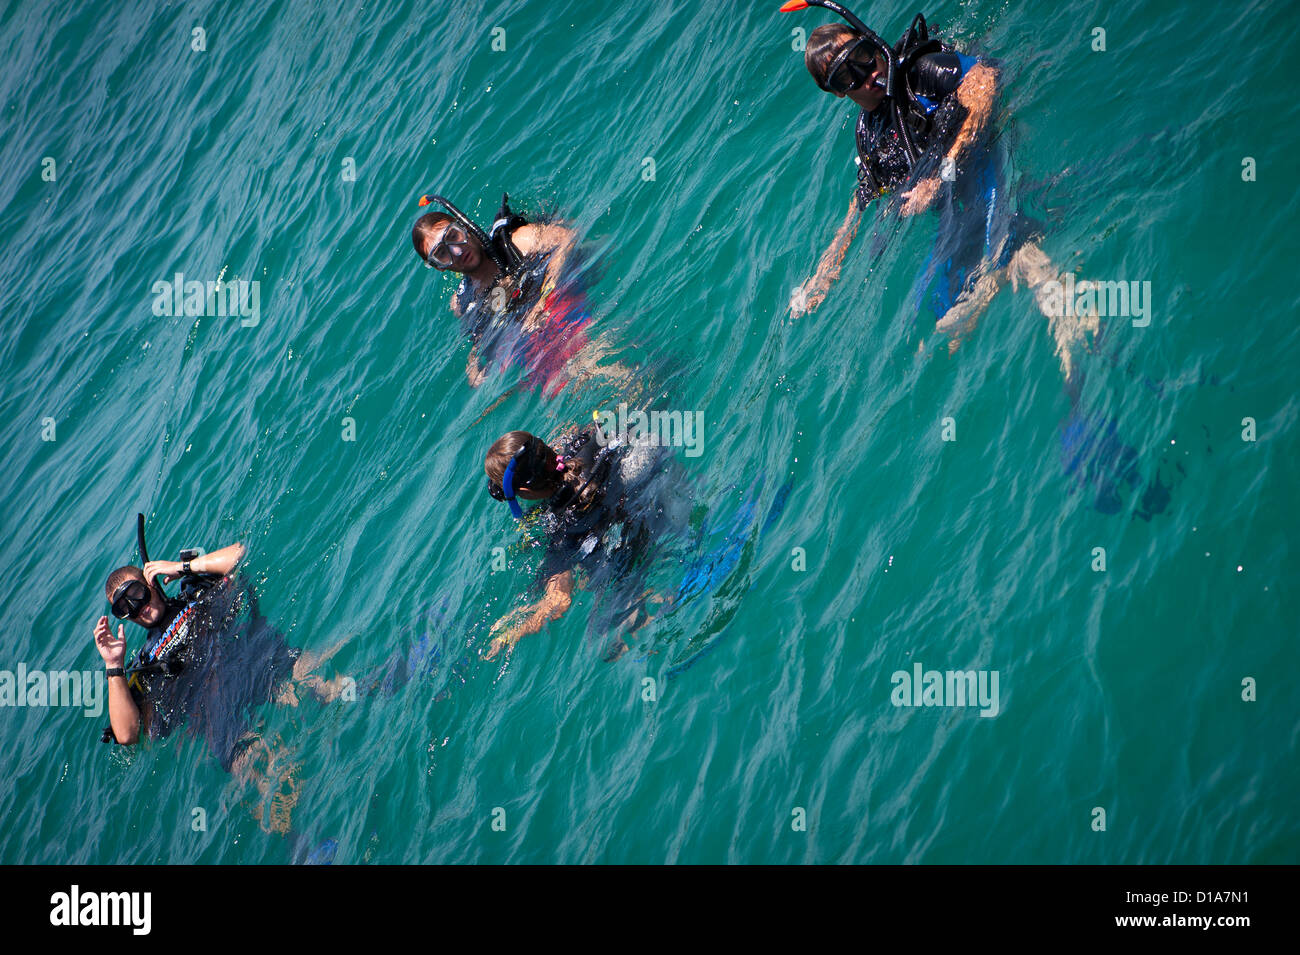 Les plongeurs dans l'eau avant une plongée, Pattaya, Thaïlande Banque D'Images